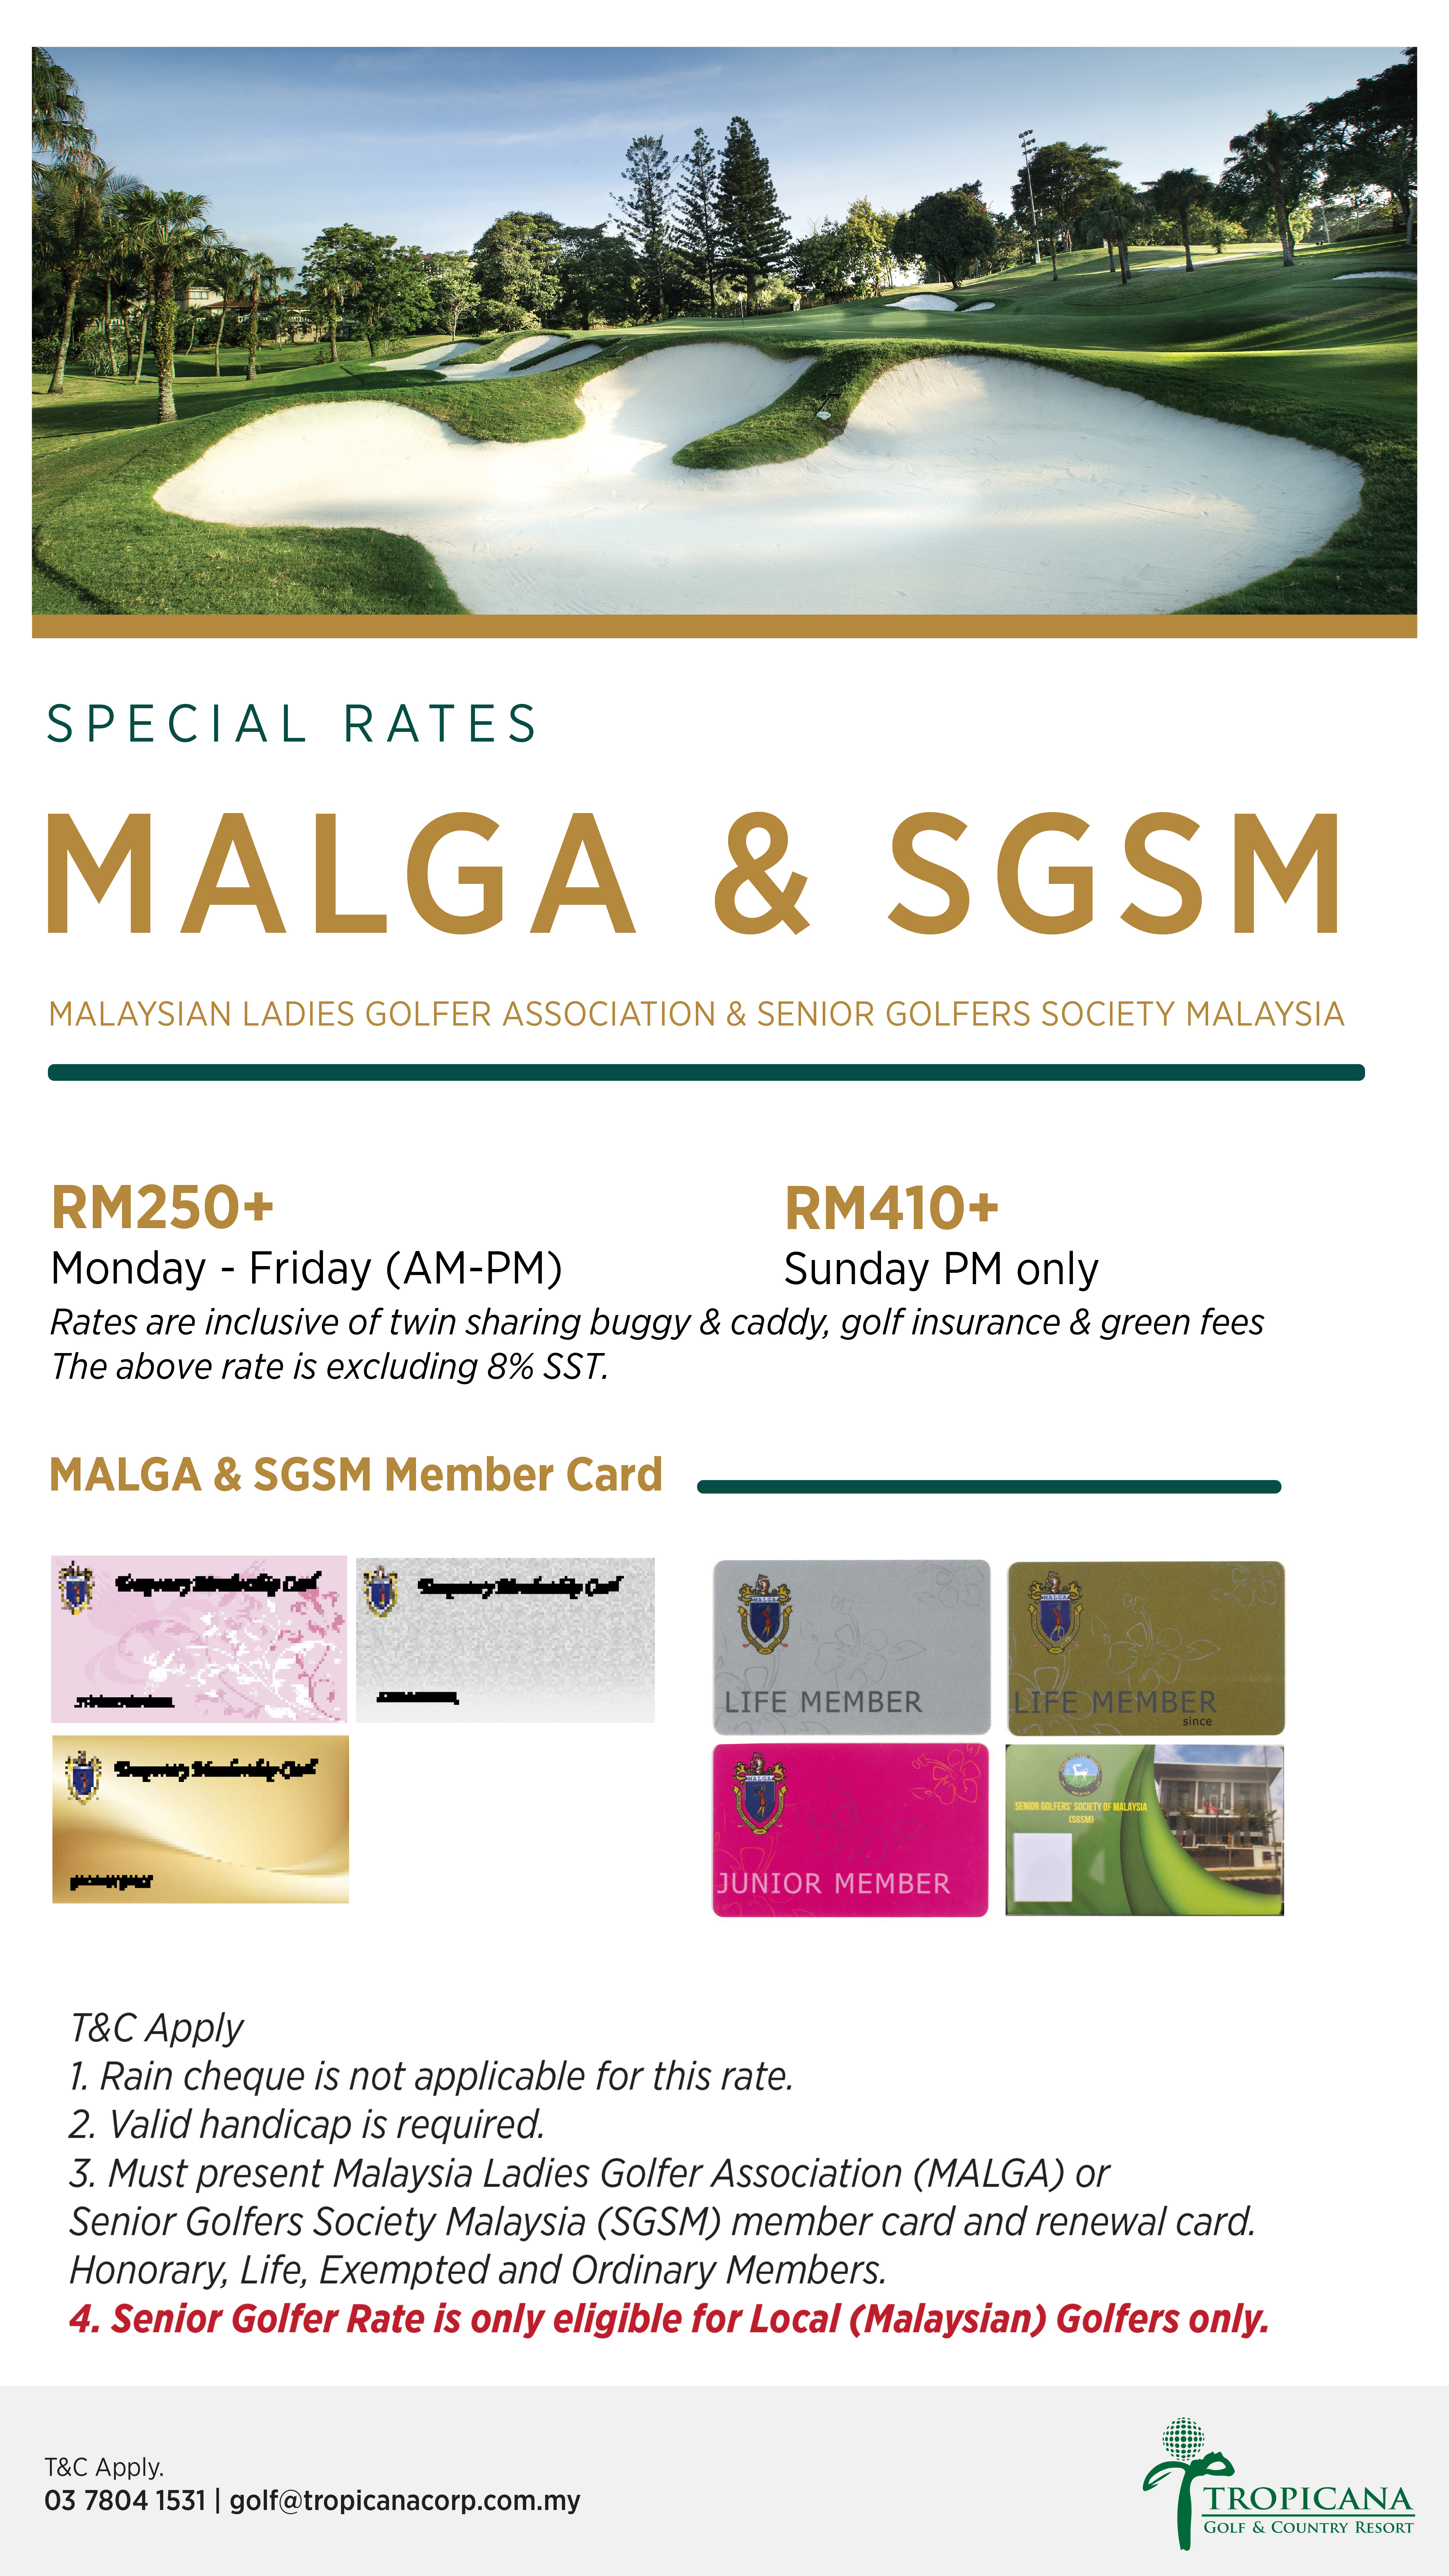  T&C of MALGA & SGSM Special Rates